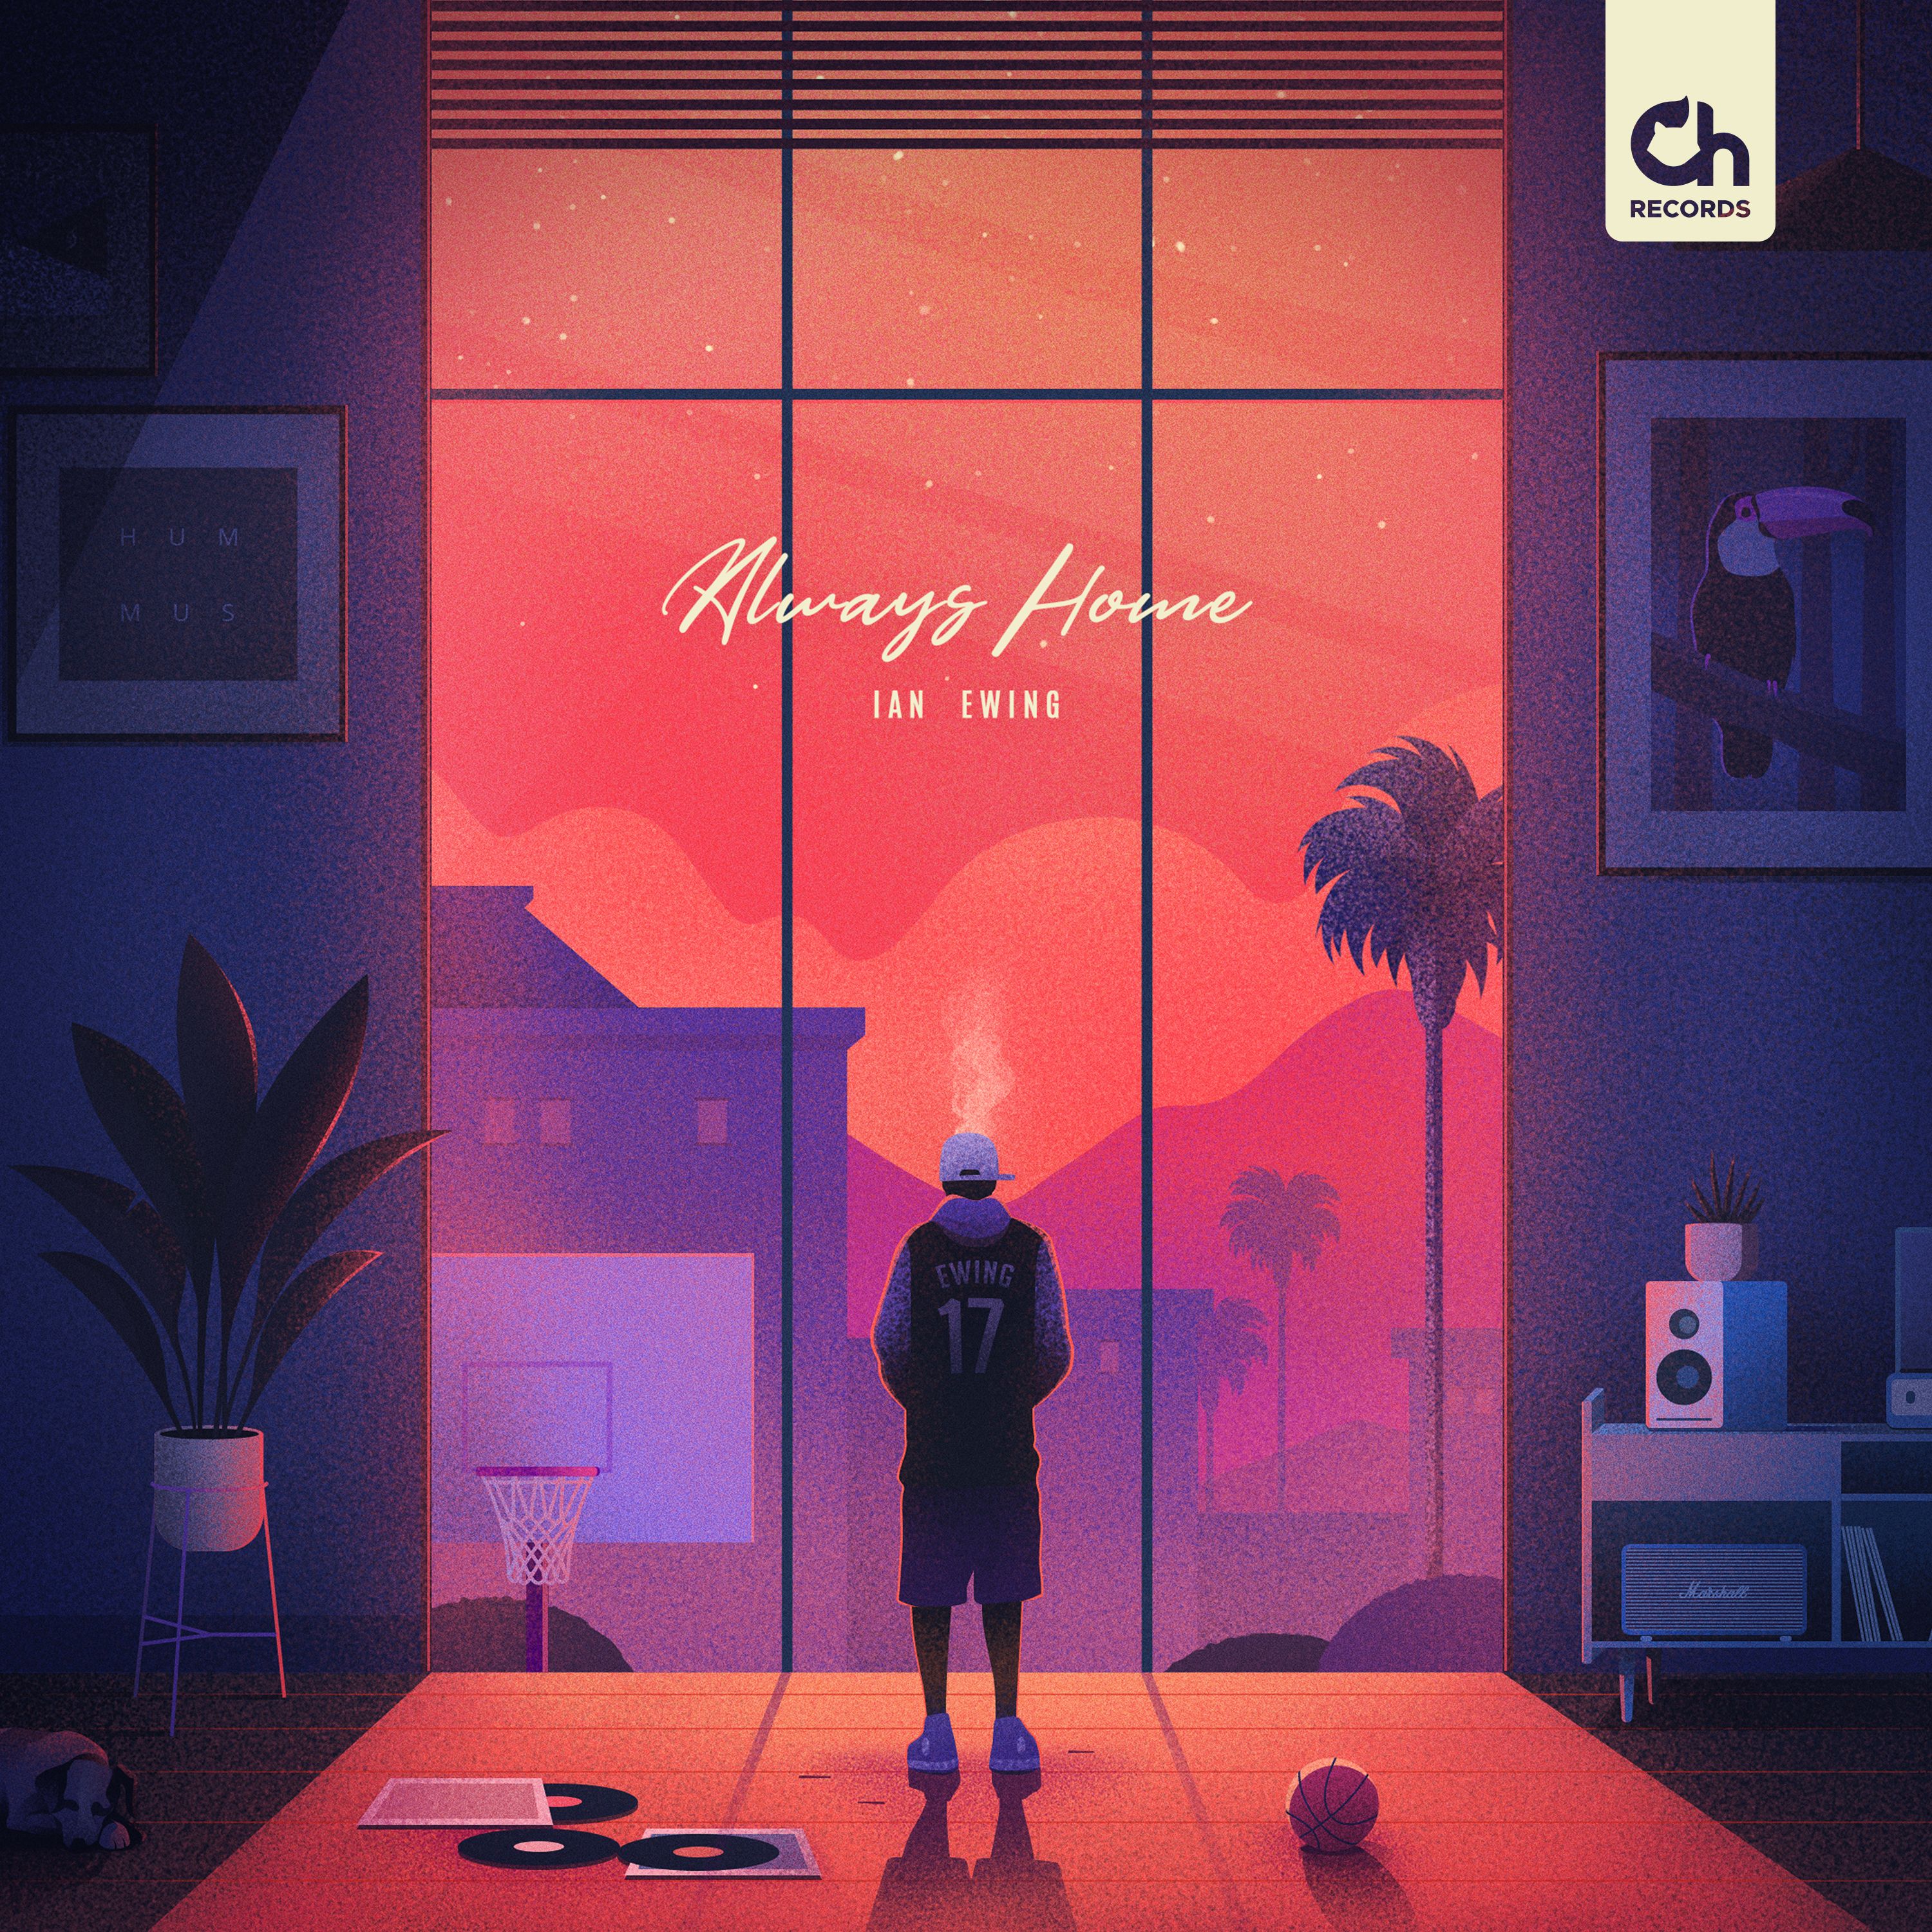 Preuzimanje datoteka Ian Ewing - 17 ["Always Home" EP out on 09.09]